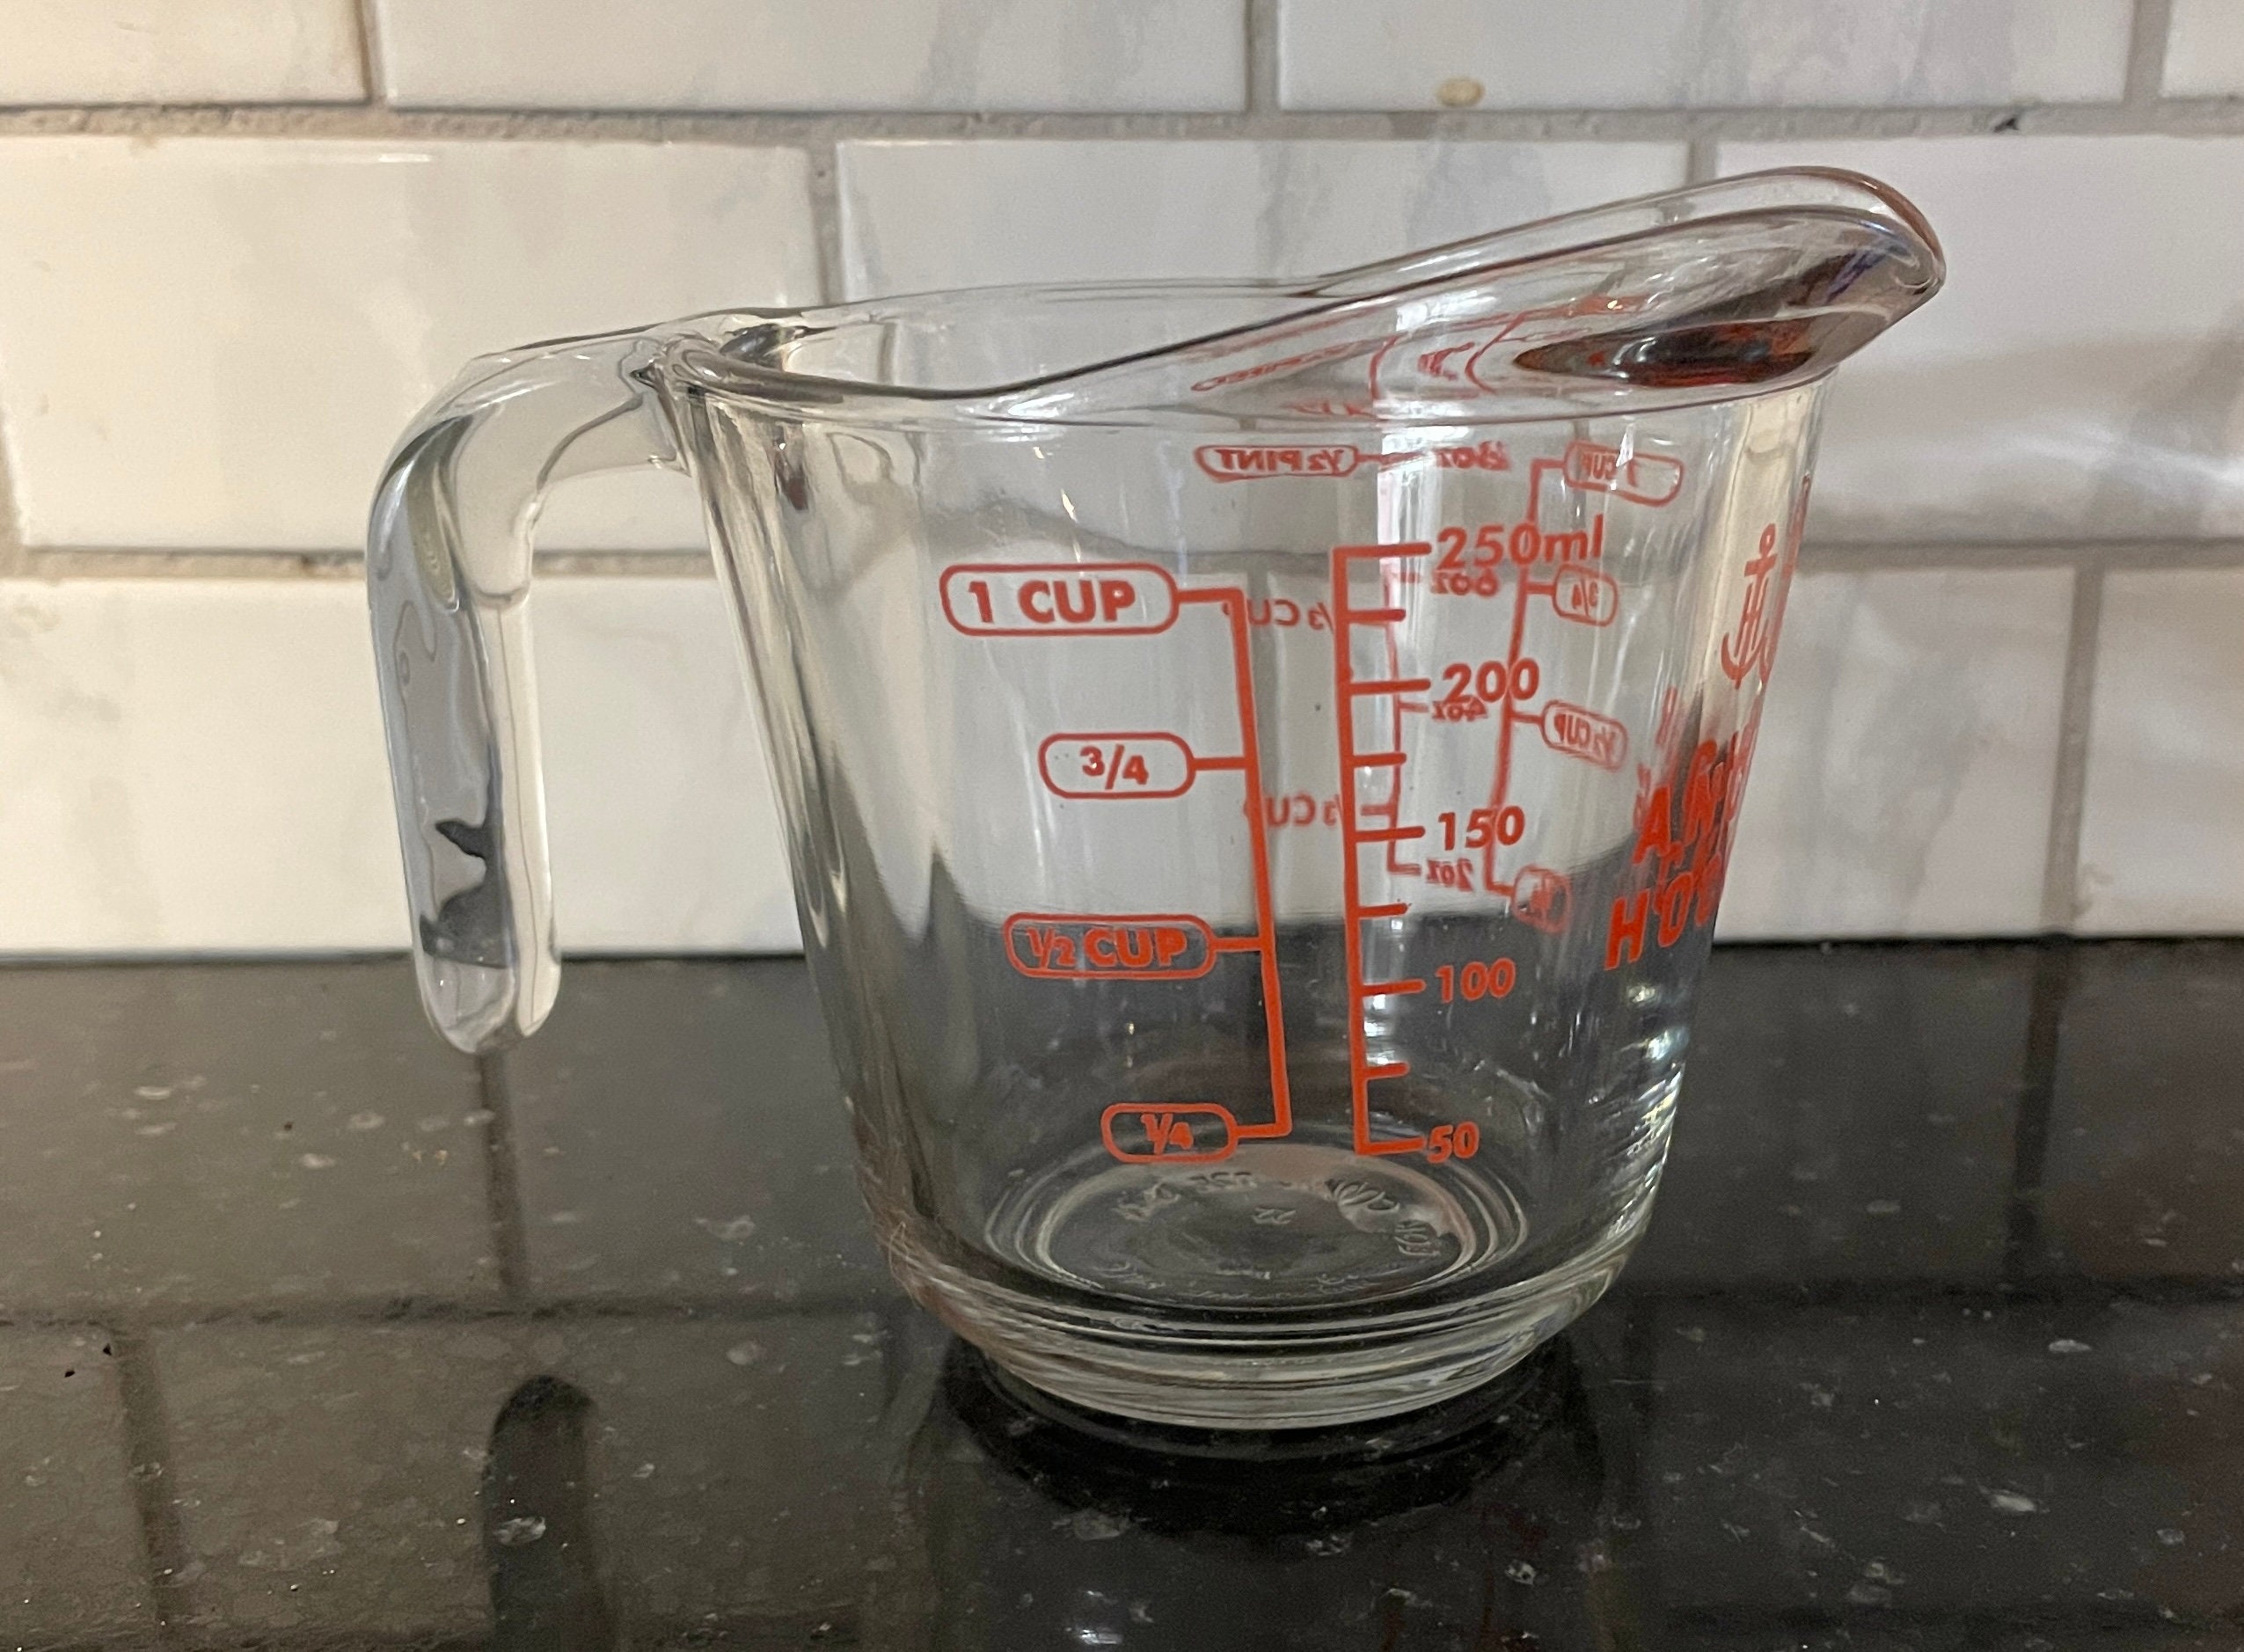 Farberware Basics 2.5-Cup Measuring Cup